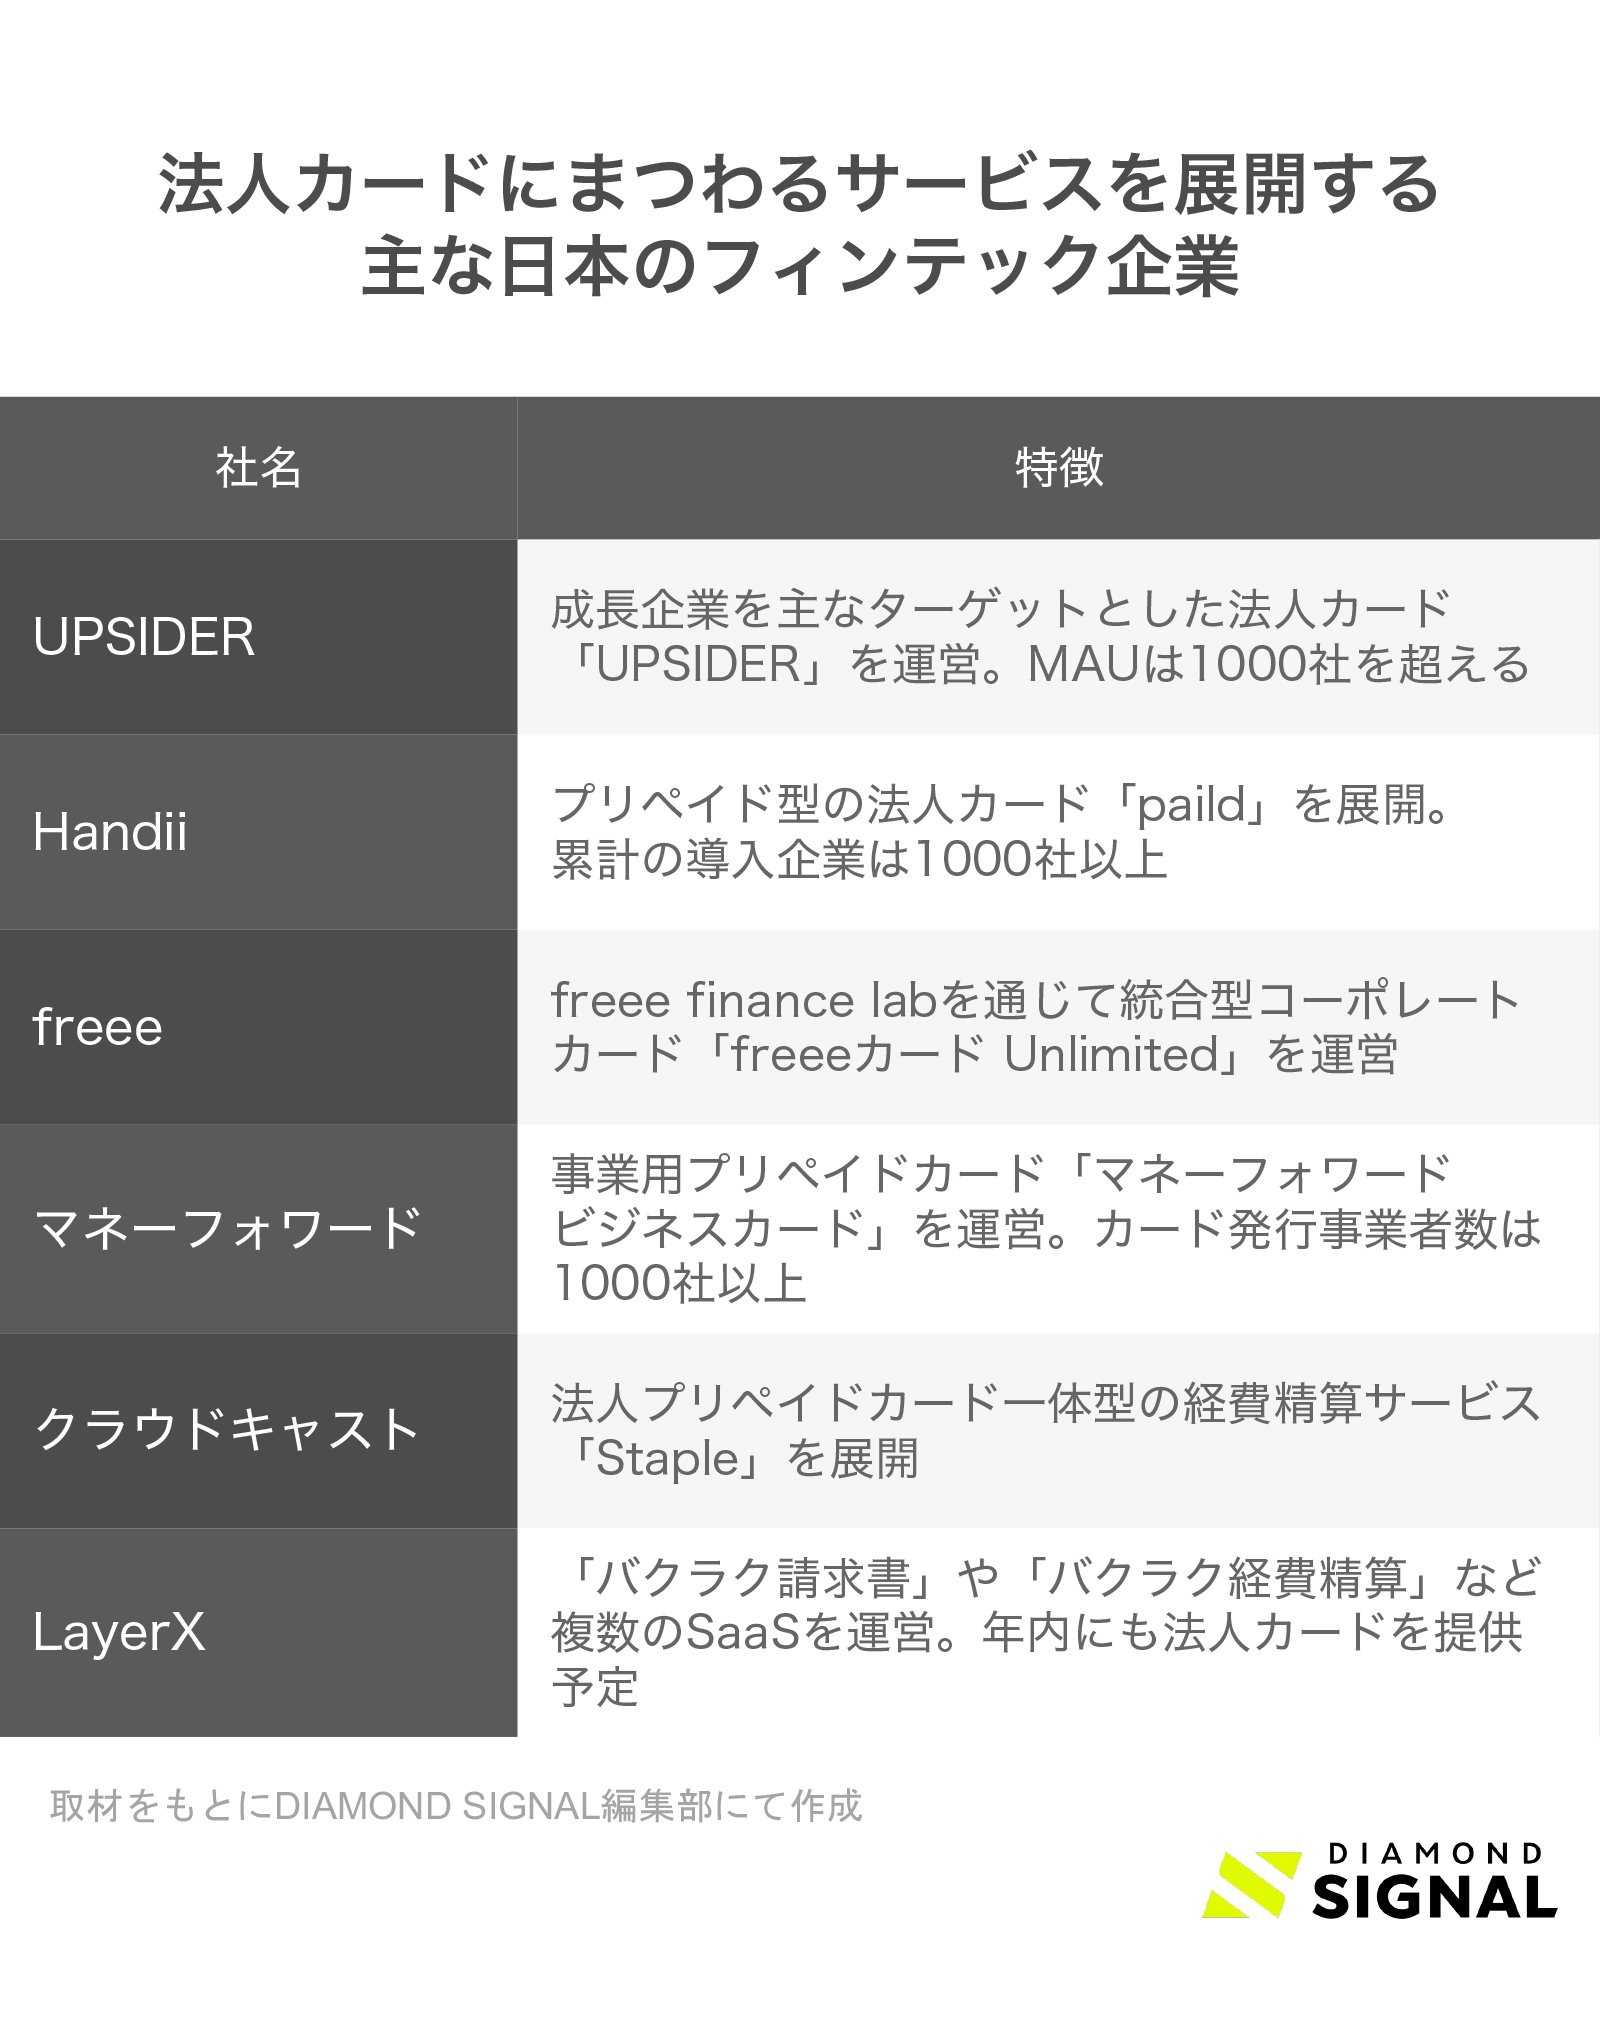 法人カードにまつわるサービスを展開する日本のフィンテック企業